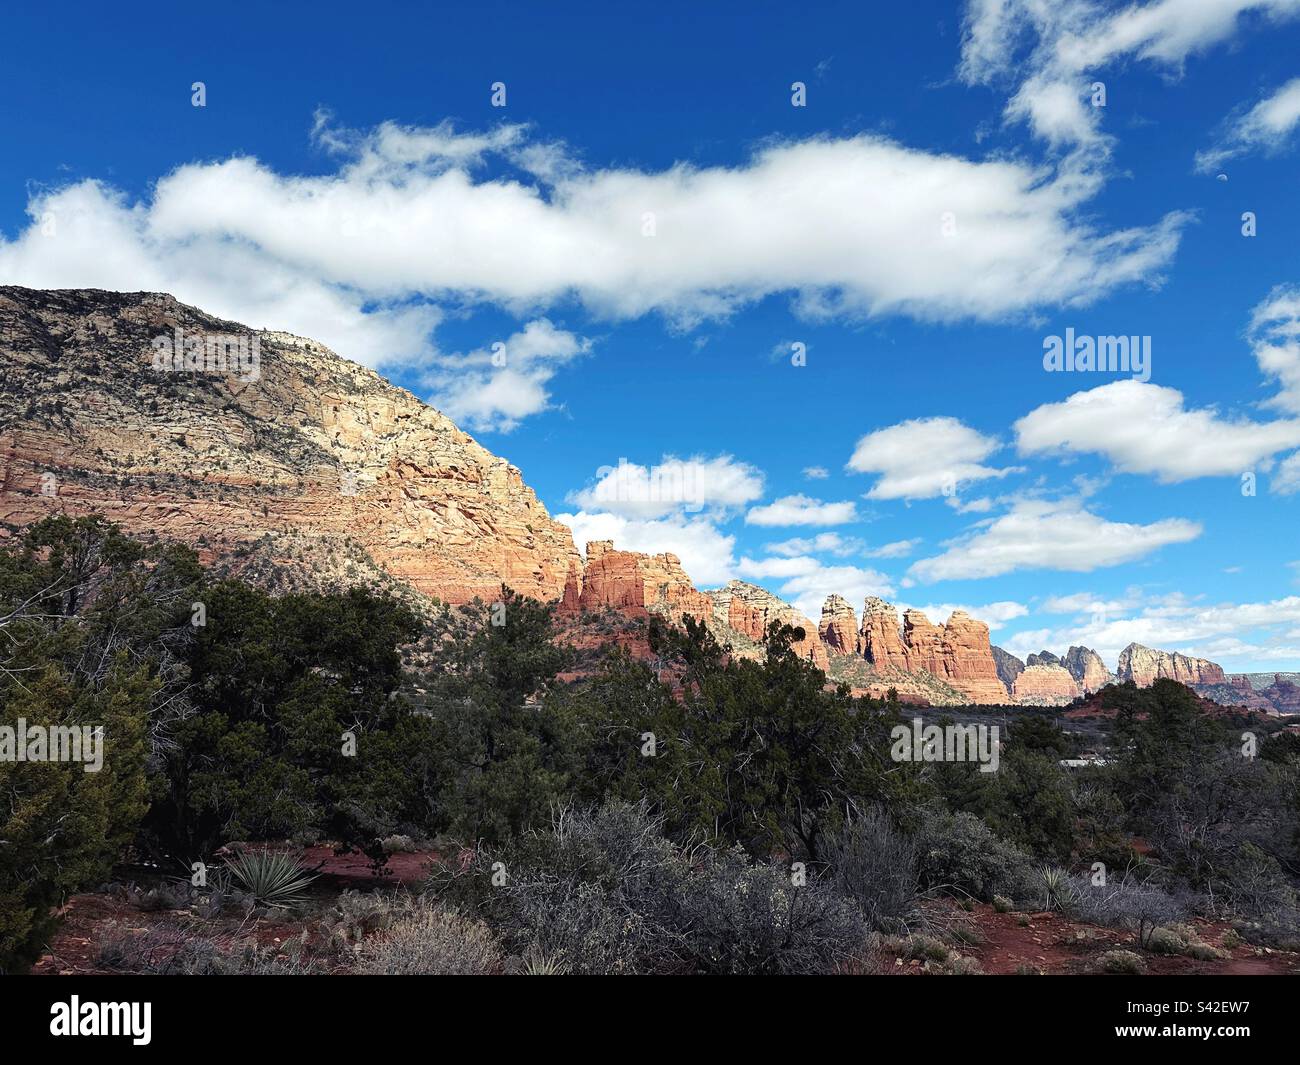 Sedona, Arizona vista panoramica con nuvole e ombre su rocce rosse. Foto Stock